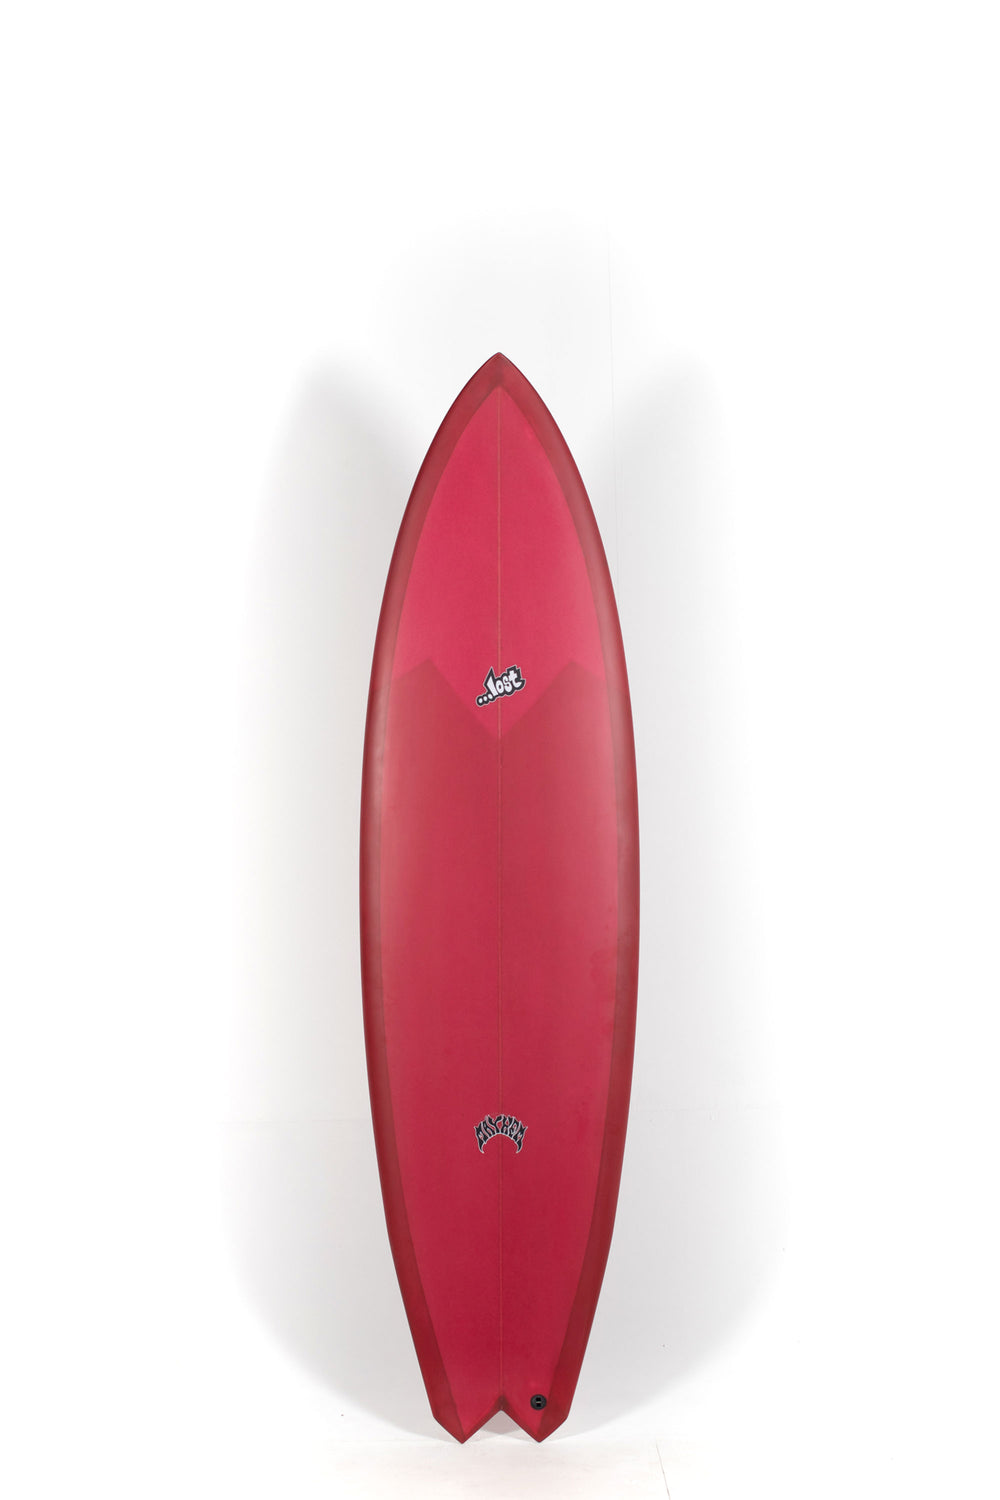 Pukas Surf Shop - Lost Surfboards - GLYDRA by Matt Biolos - 7'0